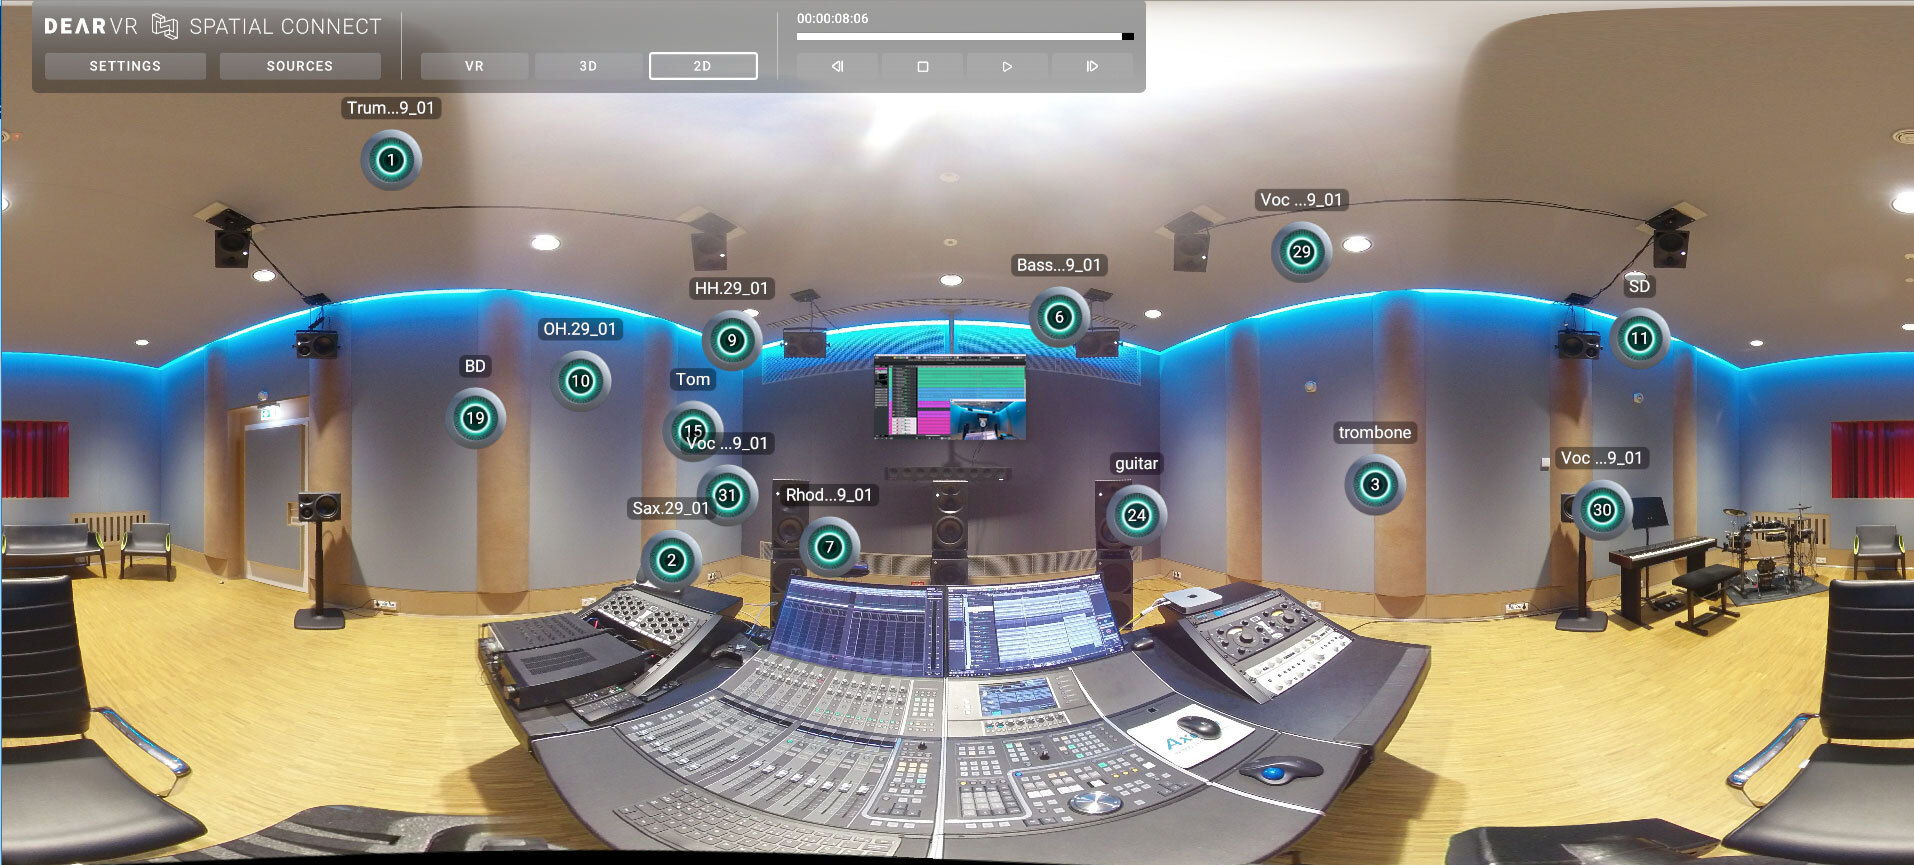 dearVR SPATIAL CONNECT biedt een uitgebreid overzicht van een ruimtelijke audiosessie door de audioplaatsingen in een VR-omgeving te simuleren